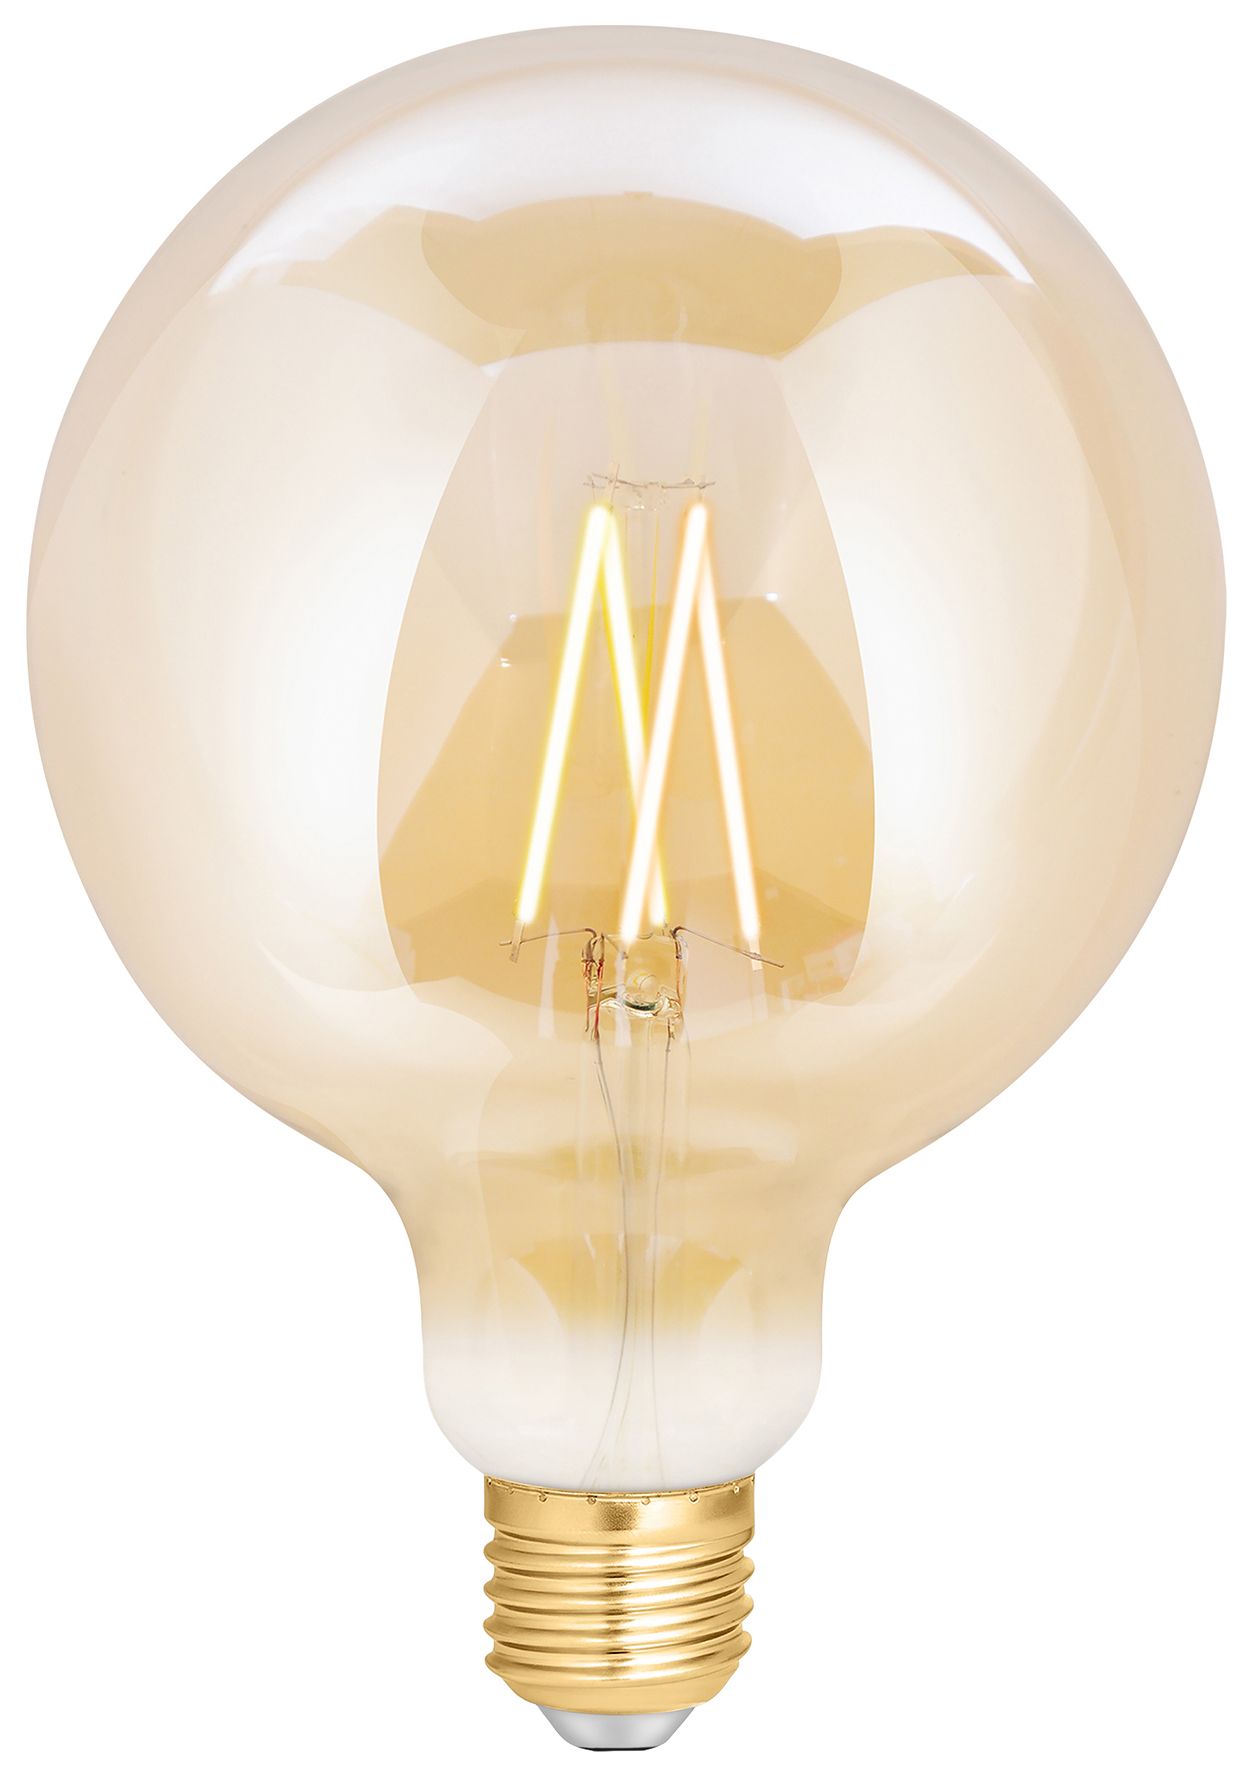 Image of 4lite WiZ Connected SMART Wi-Fi Filament GLS (ES) Light Bulb - Amber